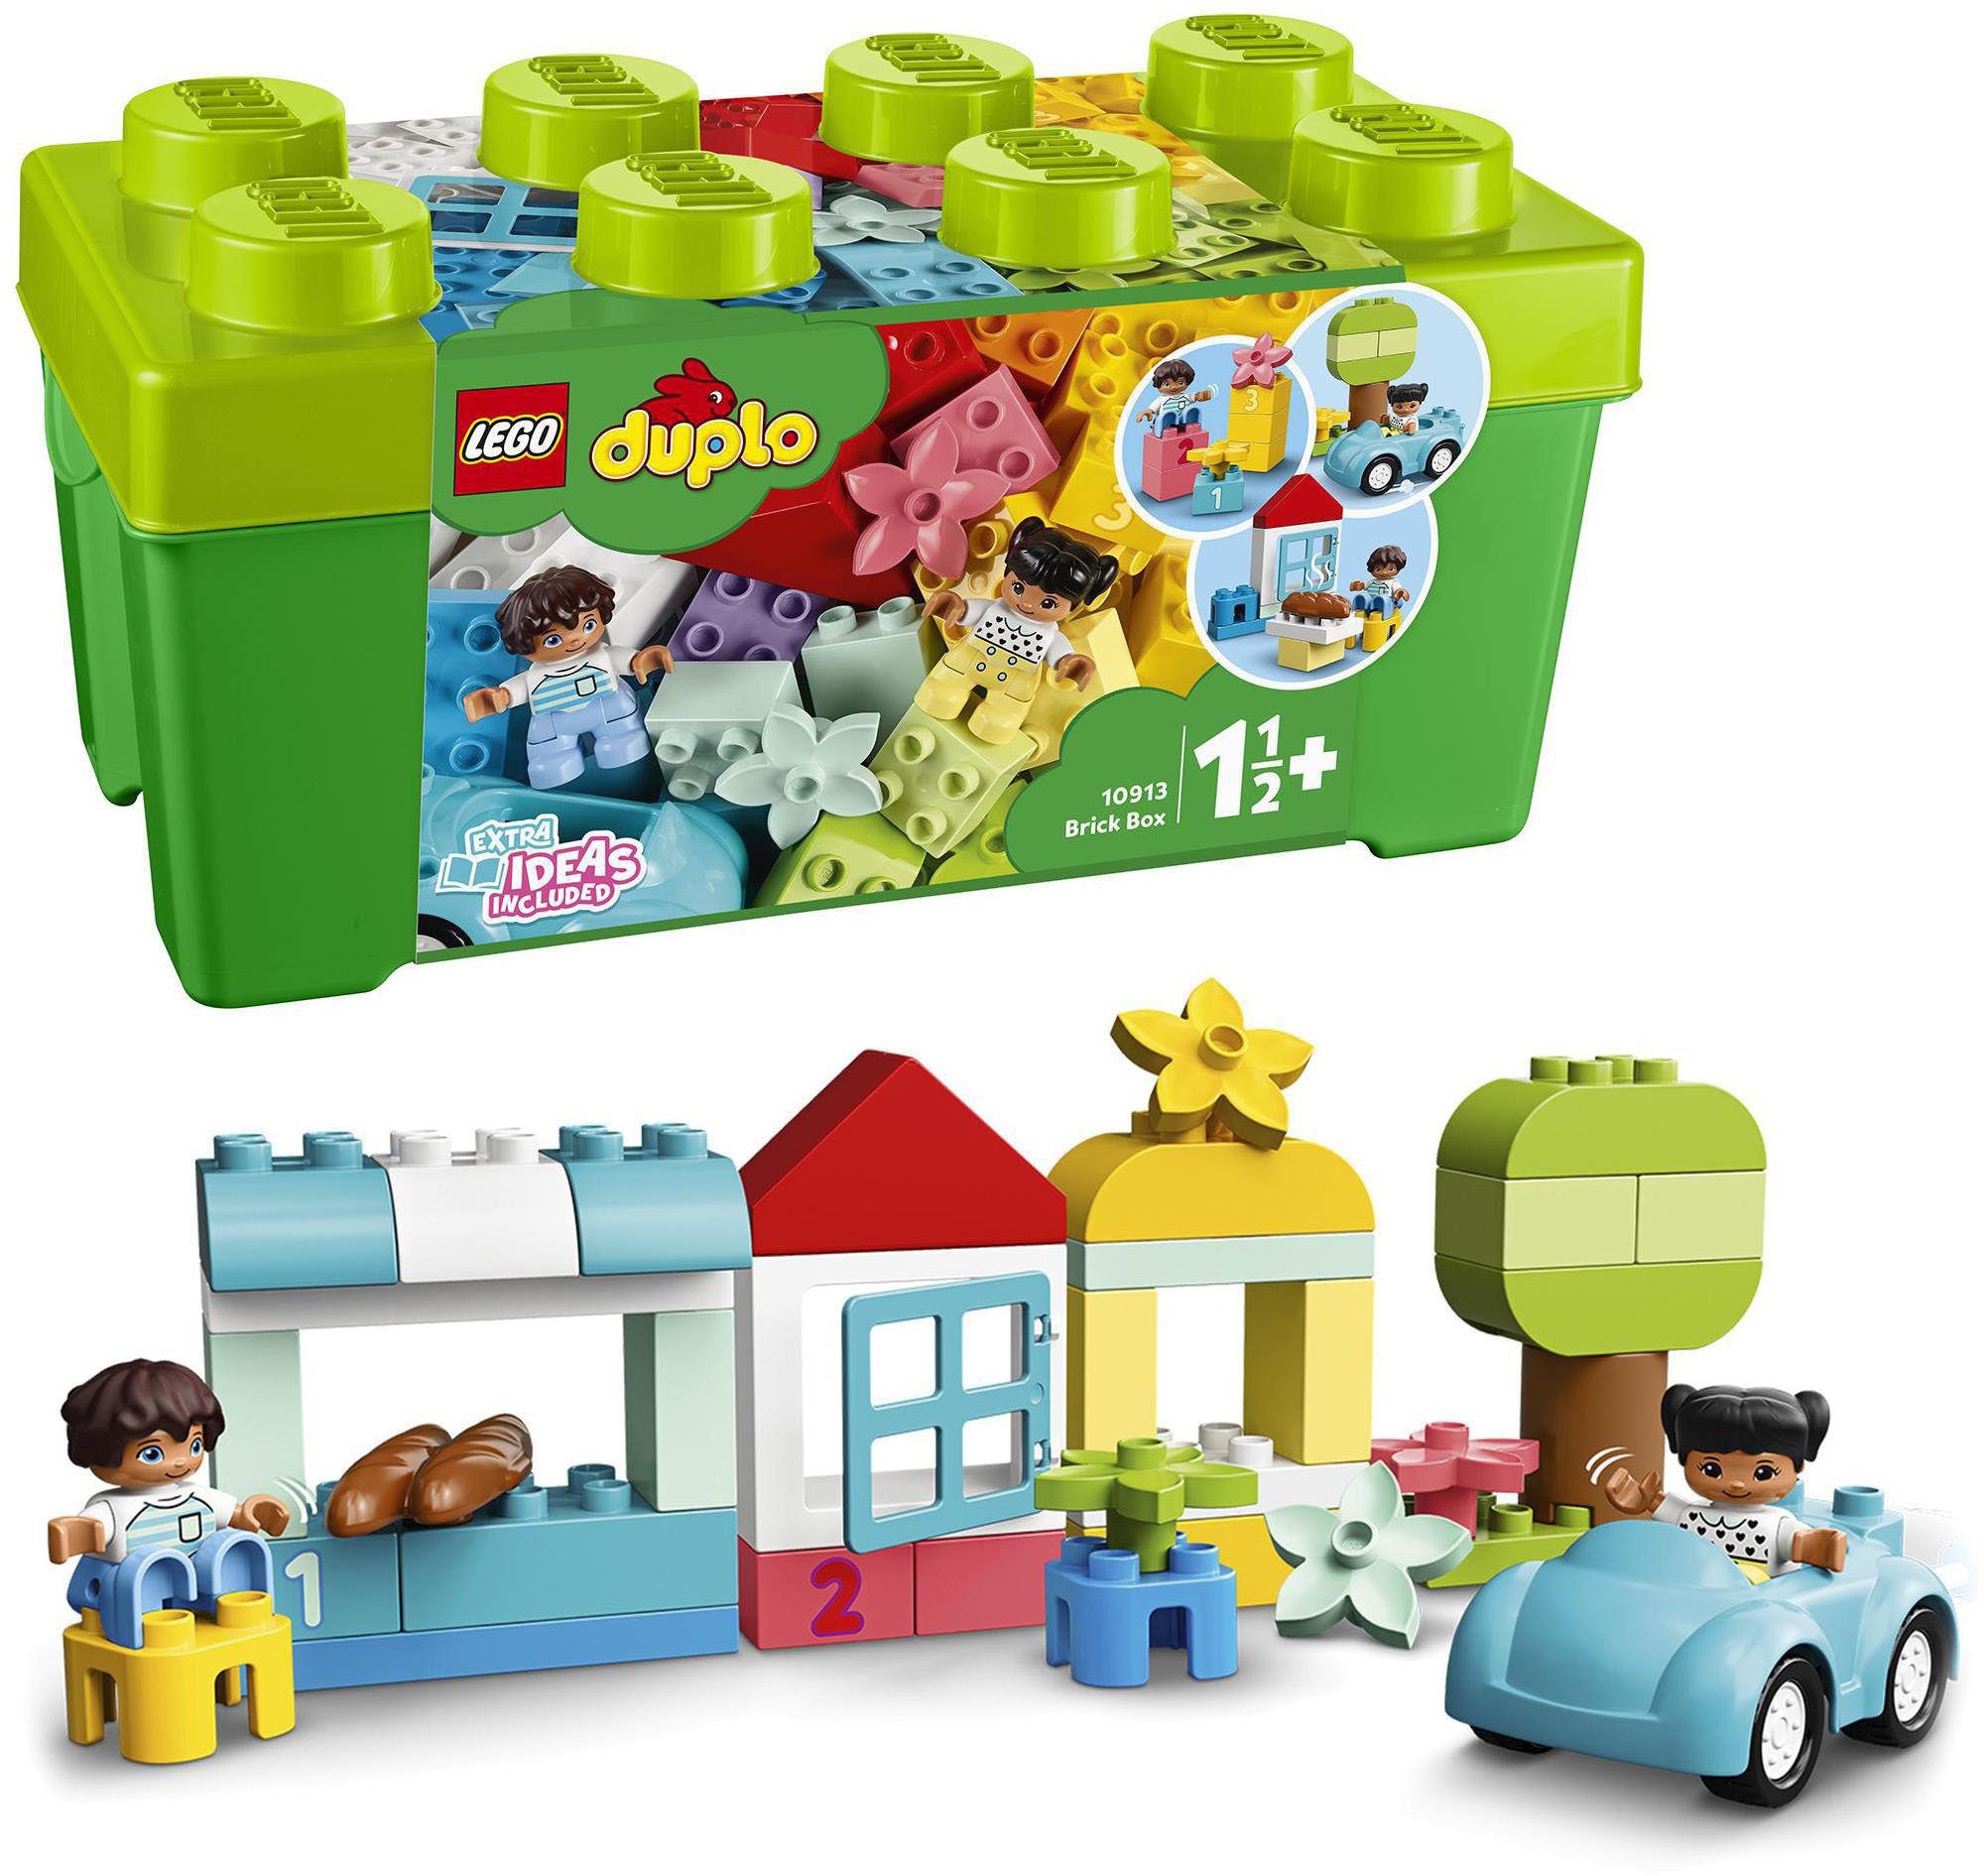 Günstiges LEGO Spielzeug online kaufen » LEGO Shop | OTTO